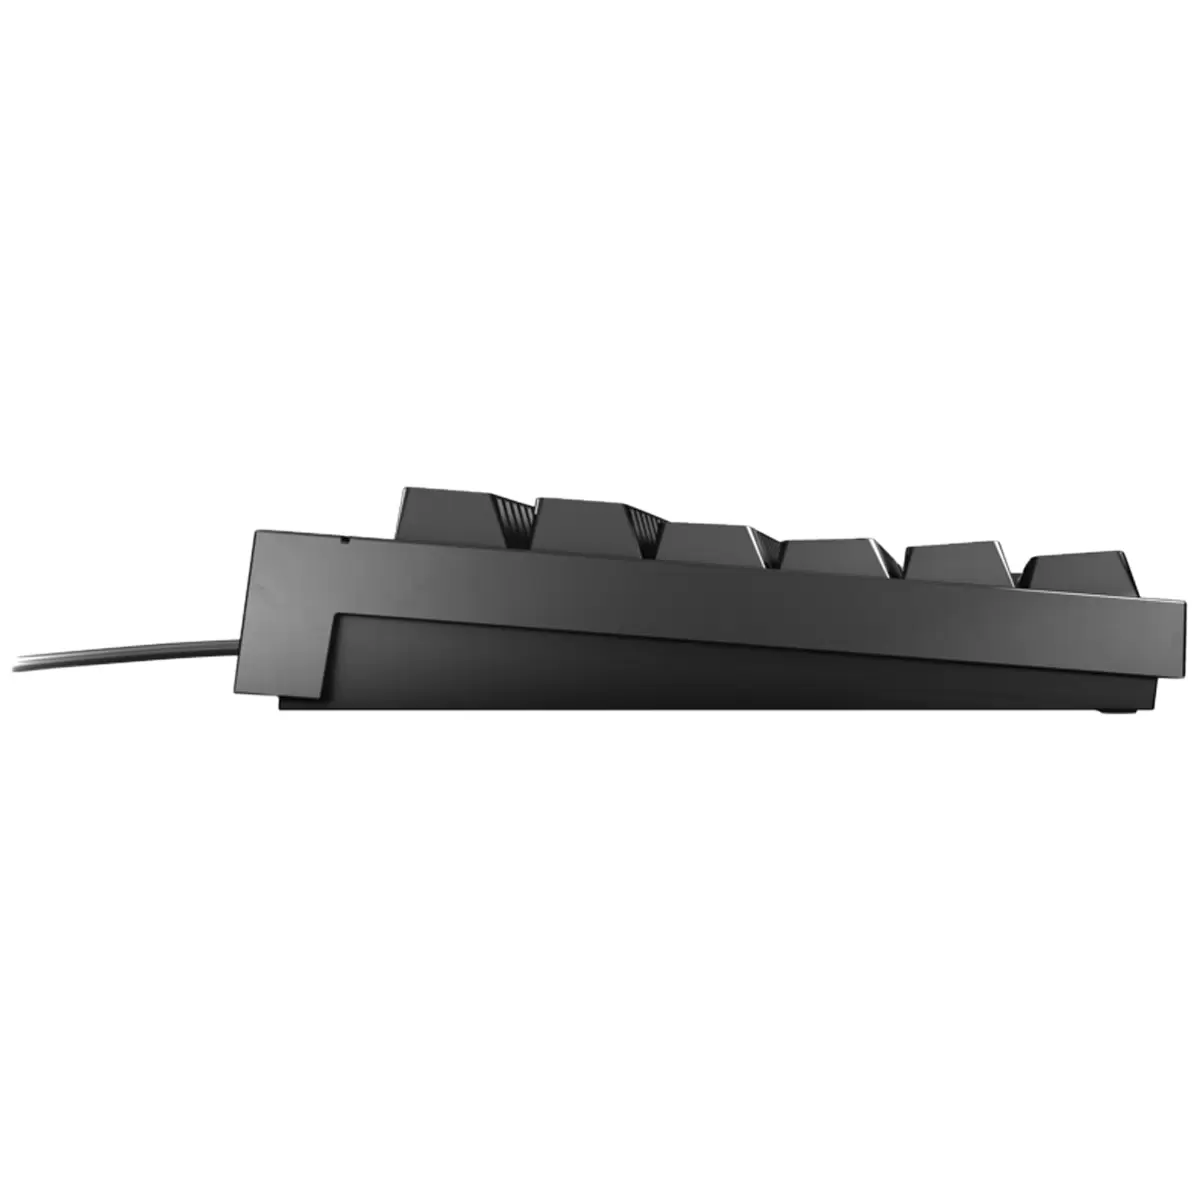 CHERRY MX 2.0S RGB Gaming Keyboard Black  G80-3821LXAEU-2